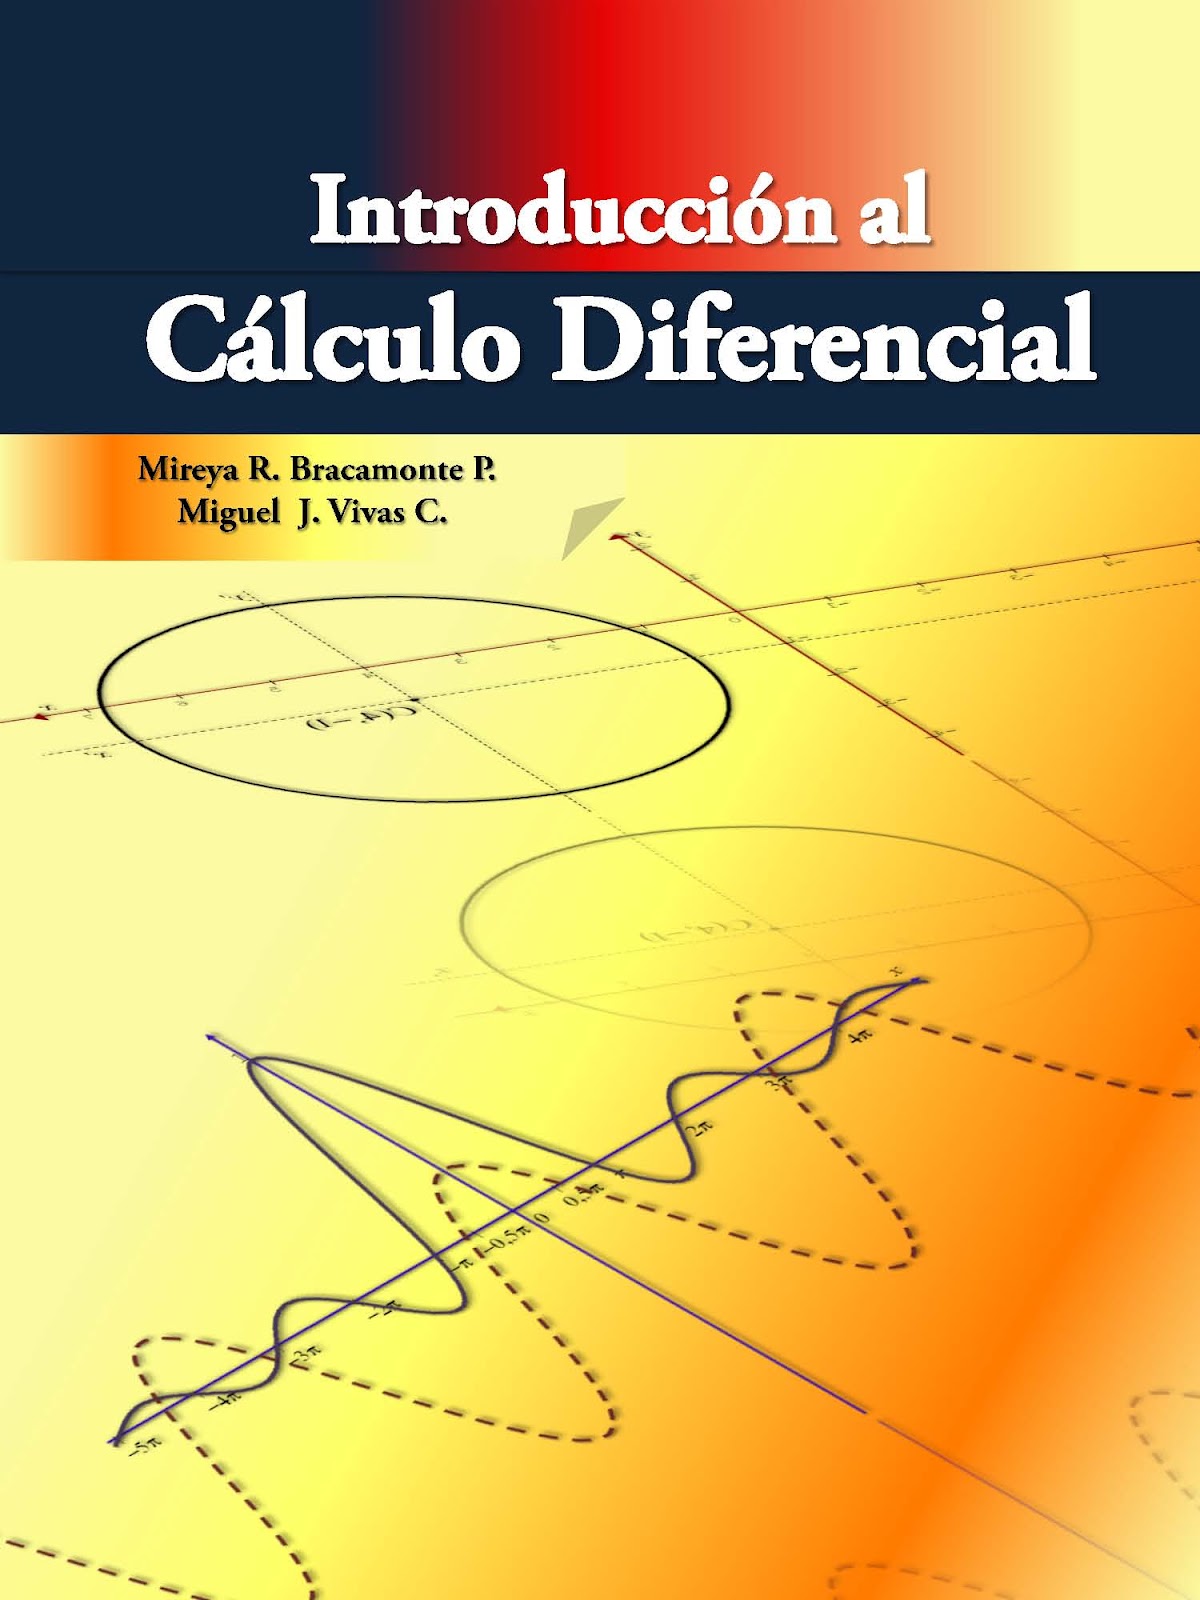 El Blog del Dr. Miguel Vivas C.: Nuevos Libros de: Introducción al Cálculo  diferencial (Mireya Bracamonte & Miguel Vivas) y Álgebra Lineal ,un enfoque  práctico (Miguel Vivas & Erik Caseres)